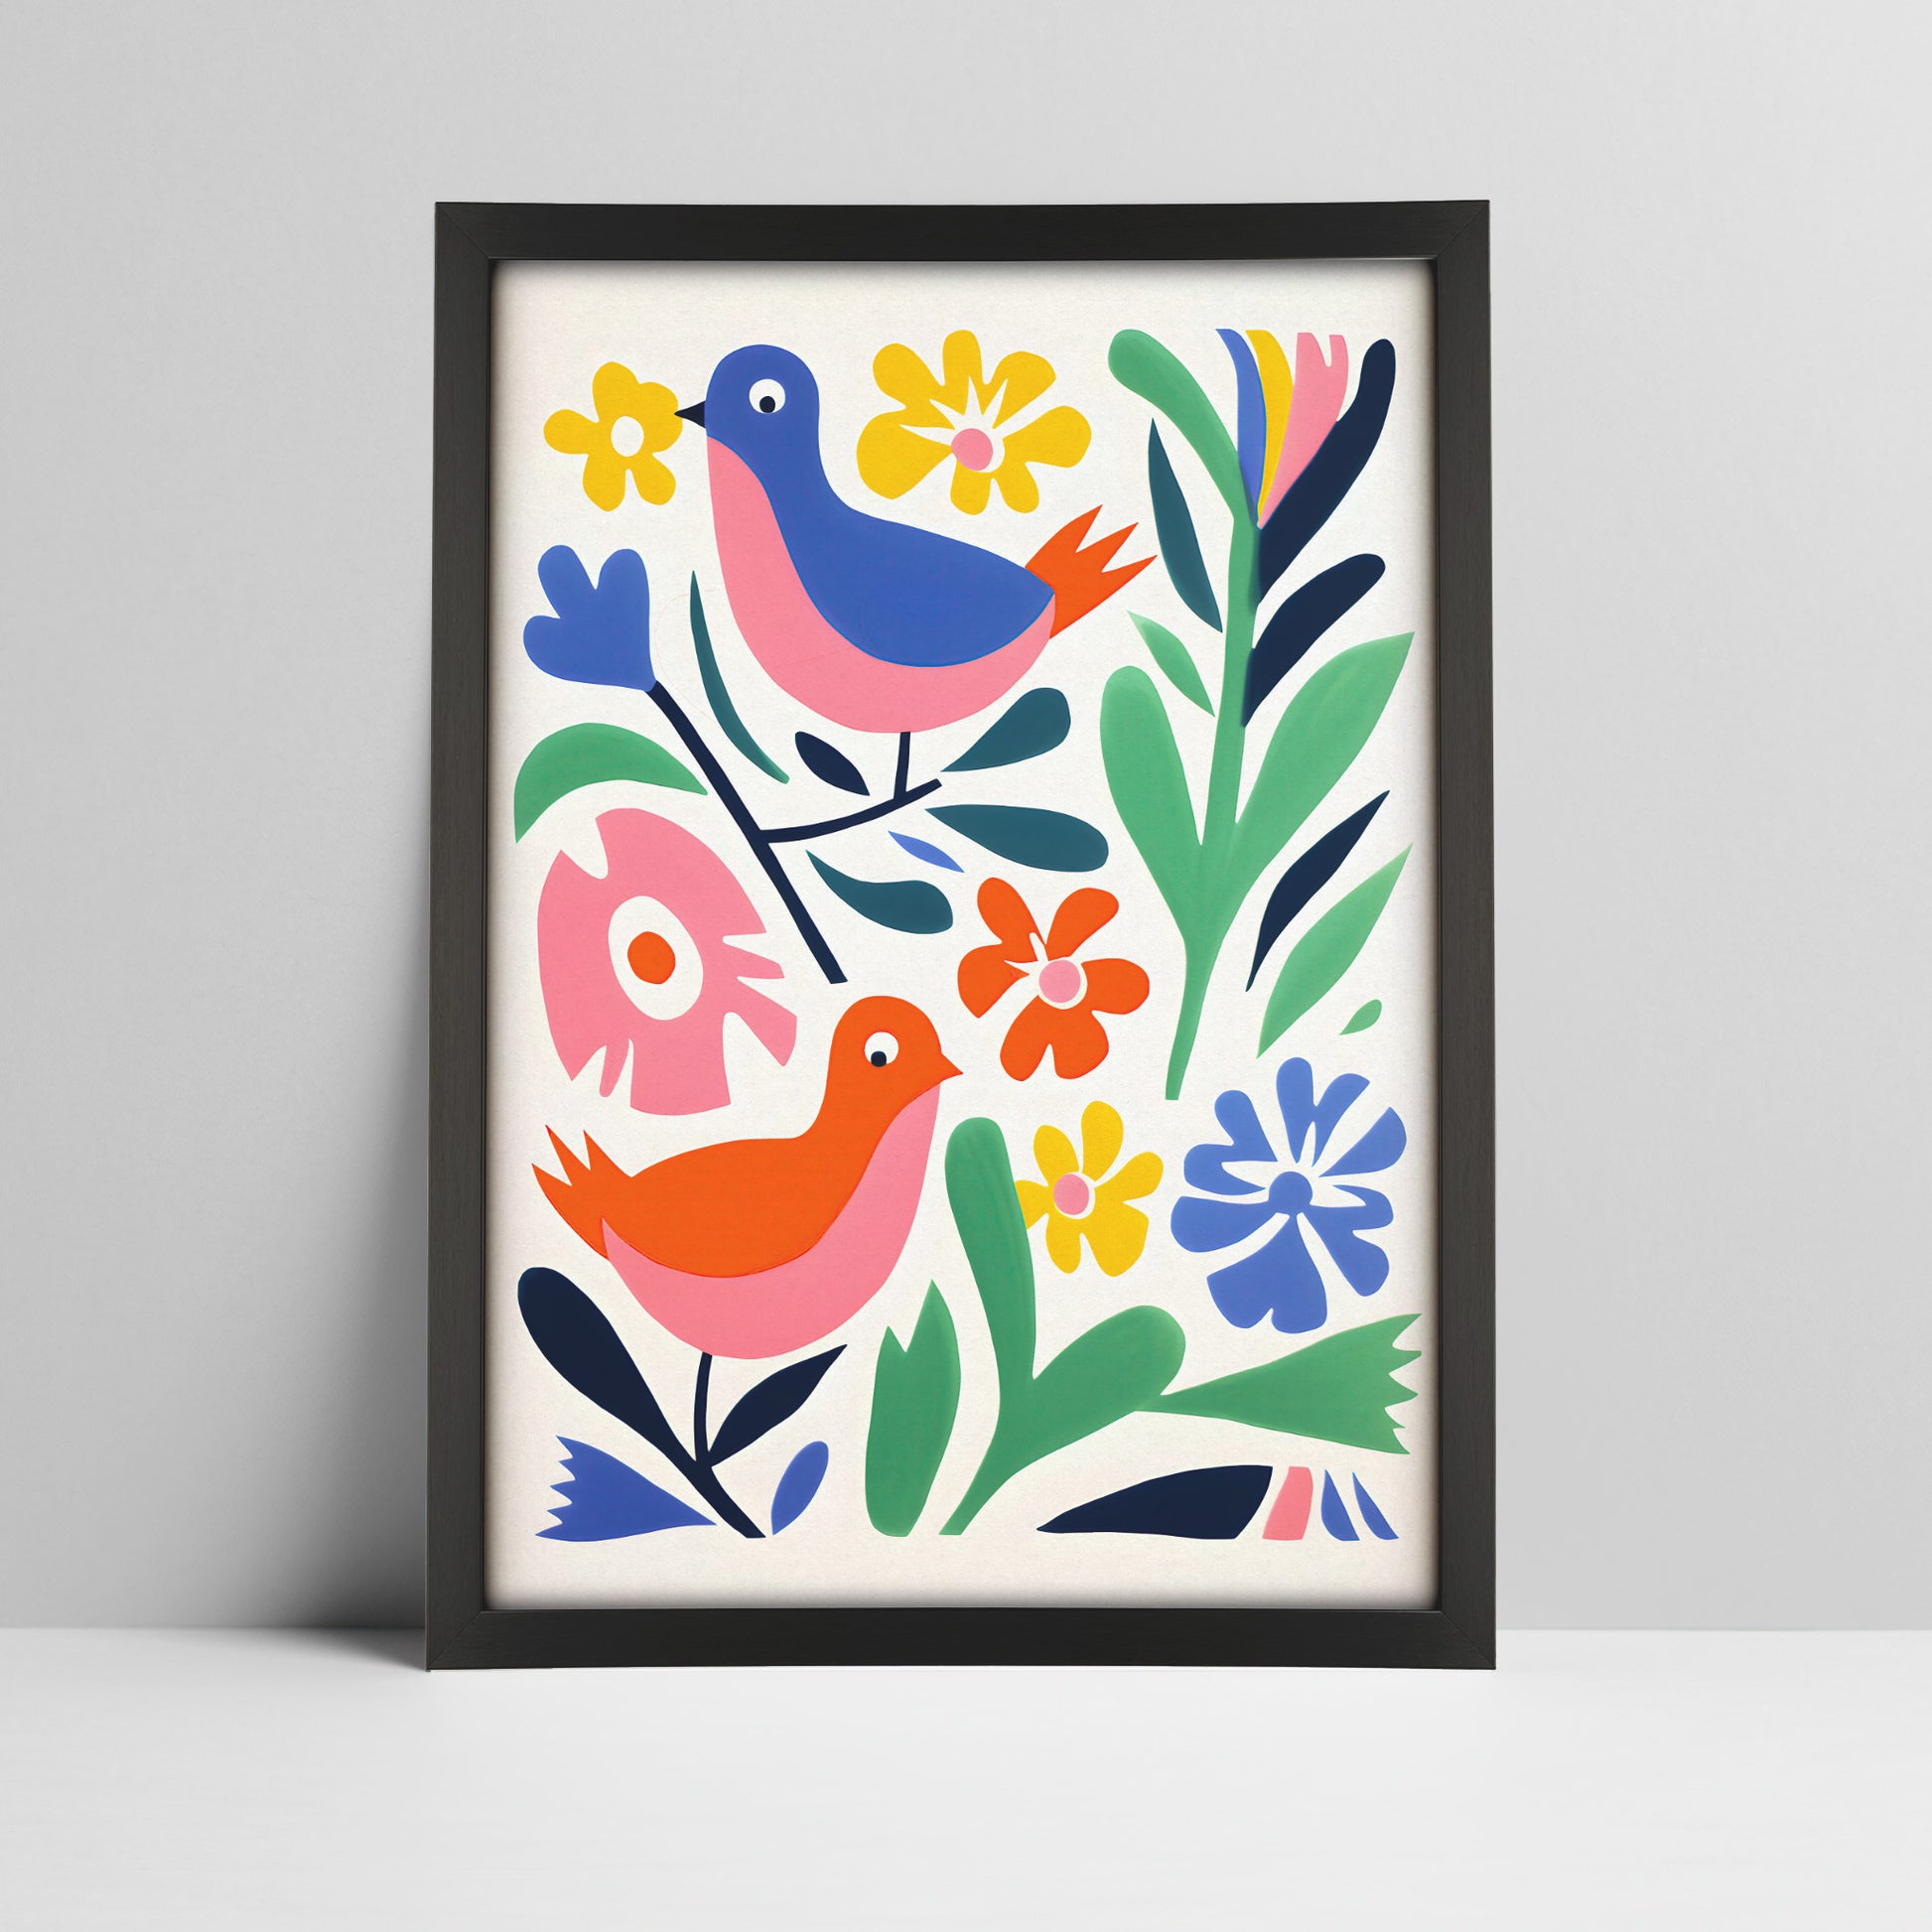 Folk art birds among vibrant flowers print in a black frame